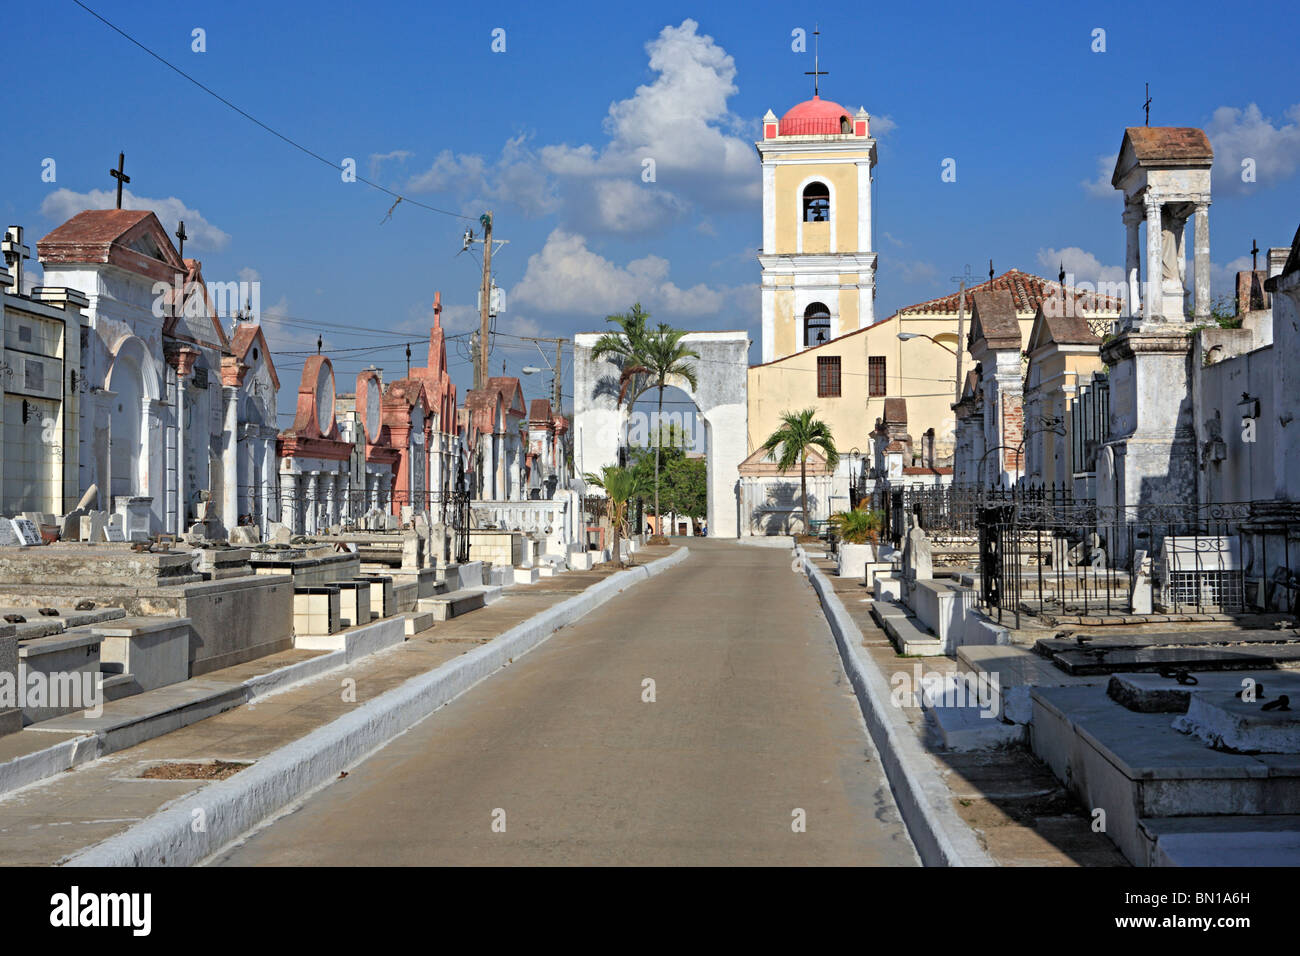 Old cemetery, Camaguey, province Camaguey, Cuba Stock Photo